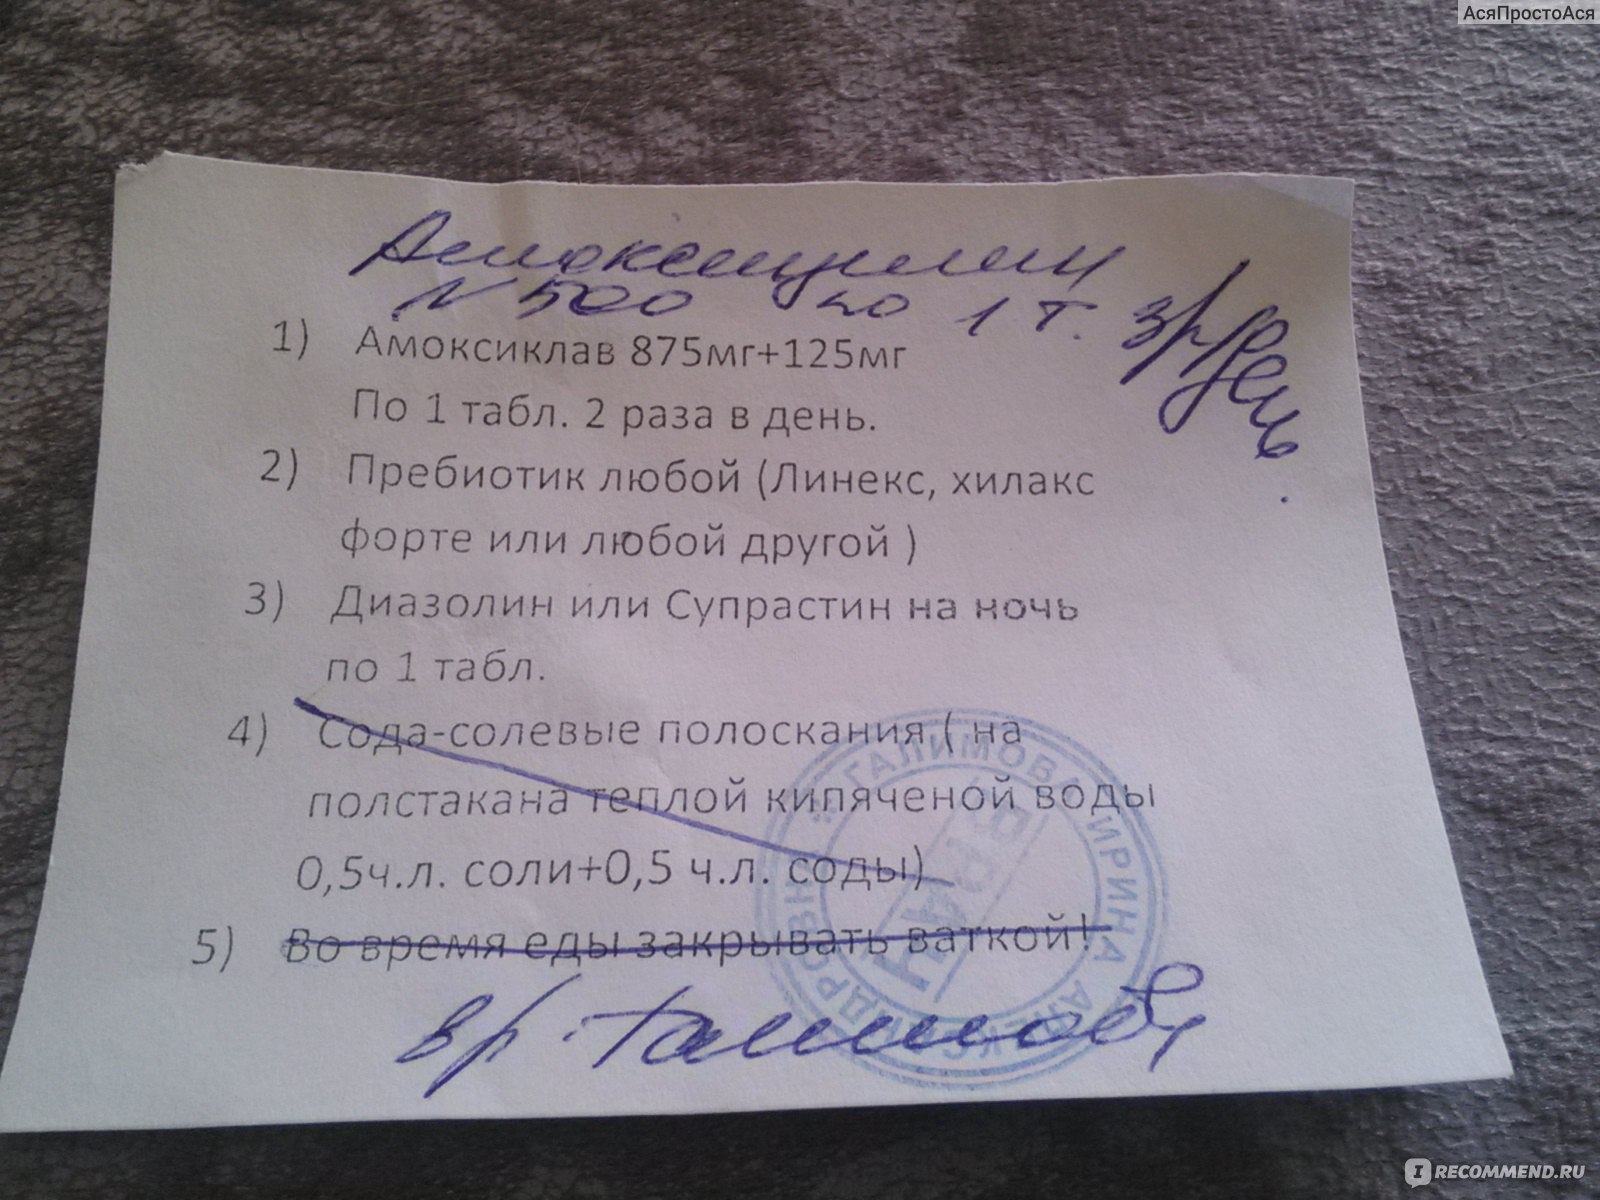 Сколько Стоит Рецепт На Трамал В Новосибирске